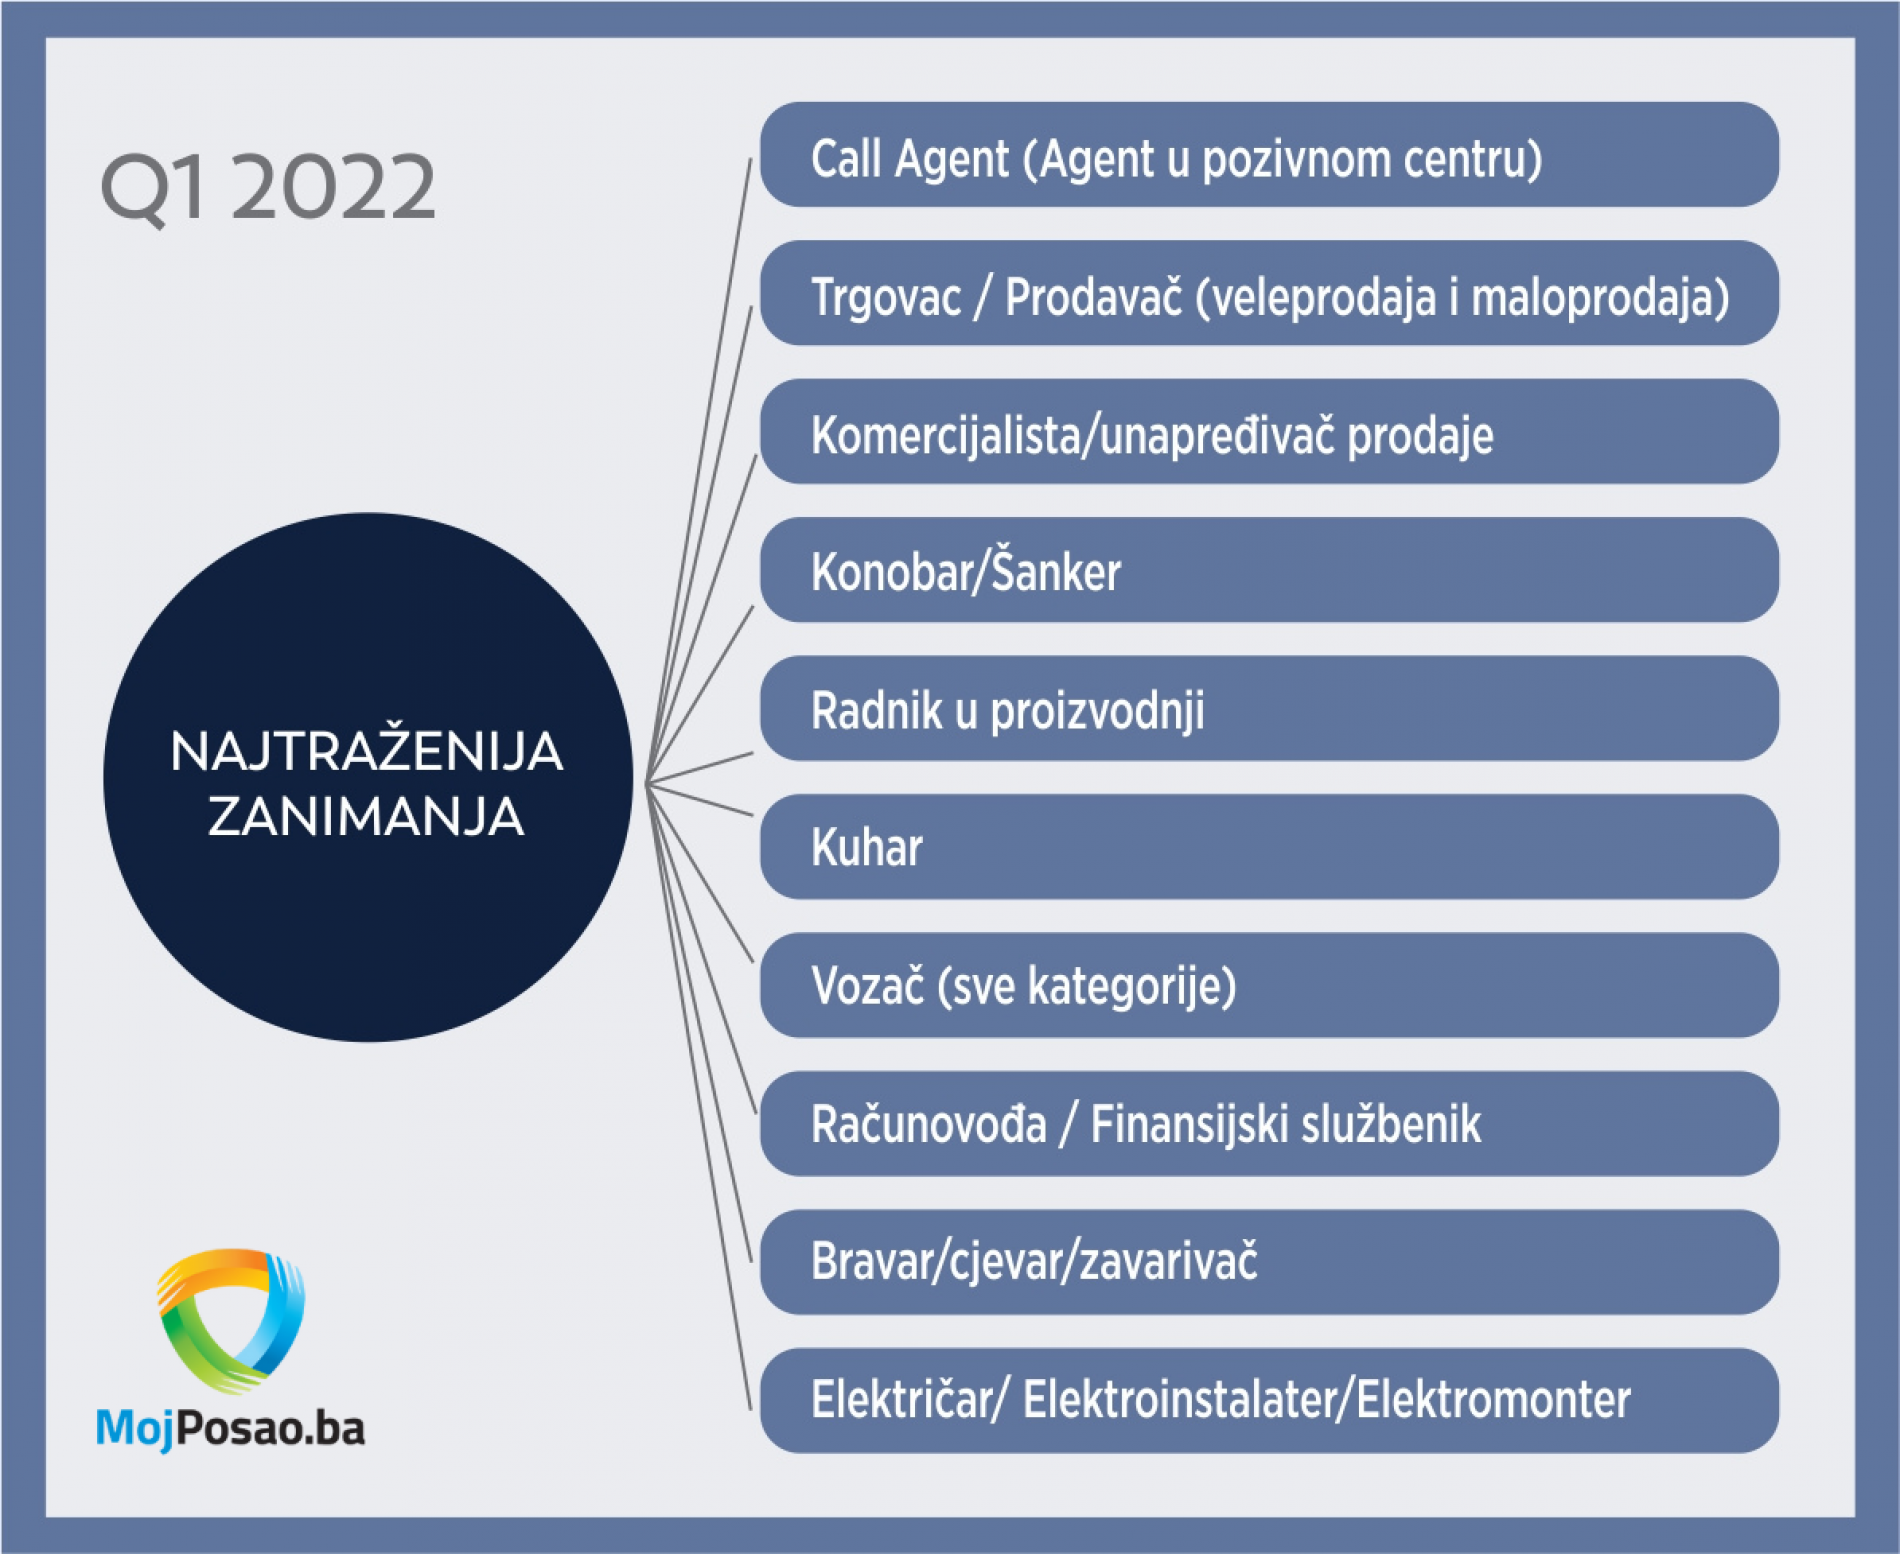 Najtraženija zanimanja u Bosni i Hercegovini u 2022.